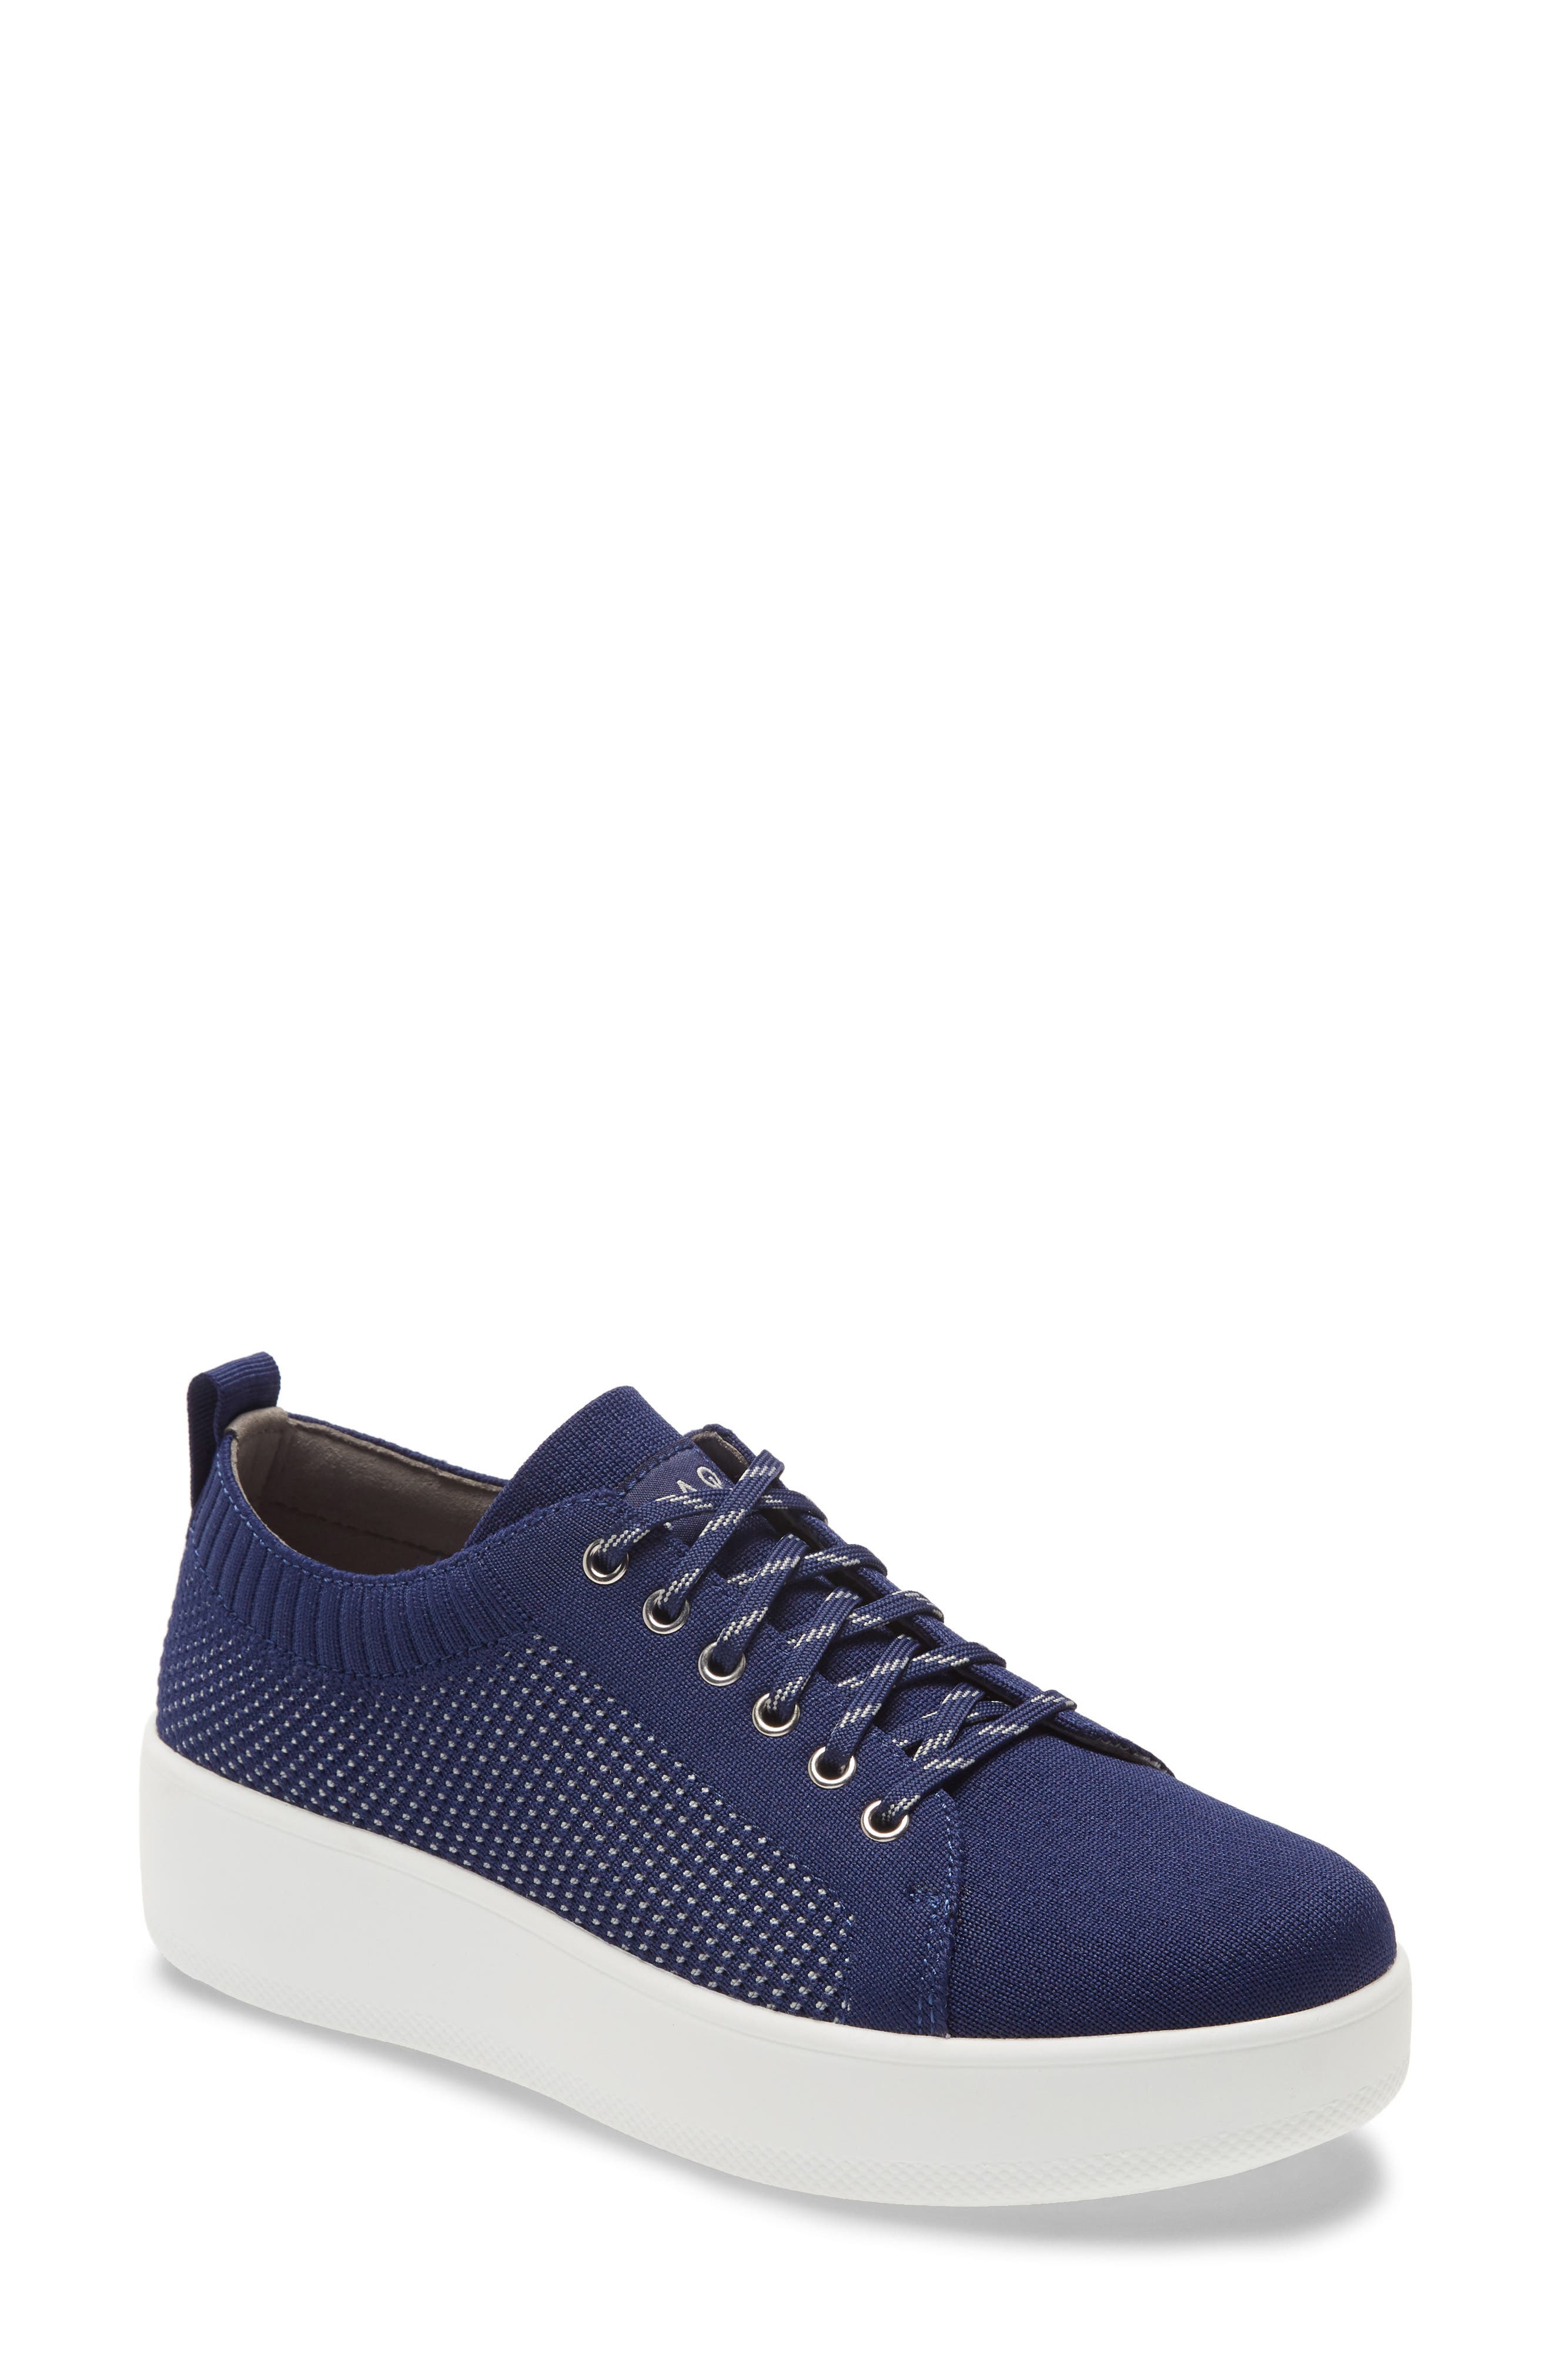 navy blue alegria shoes